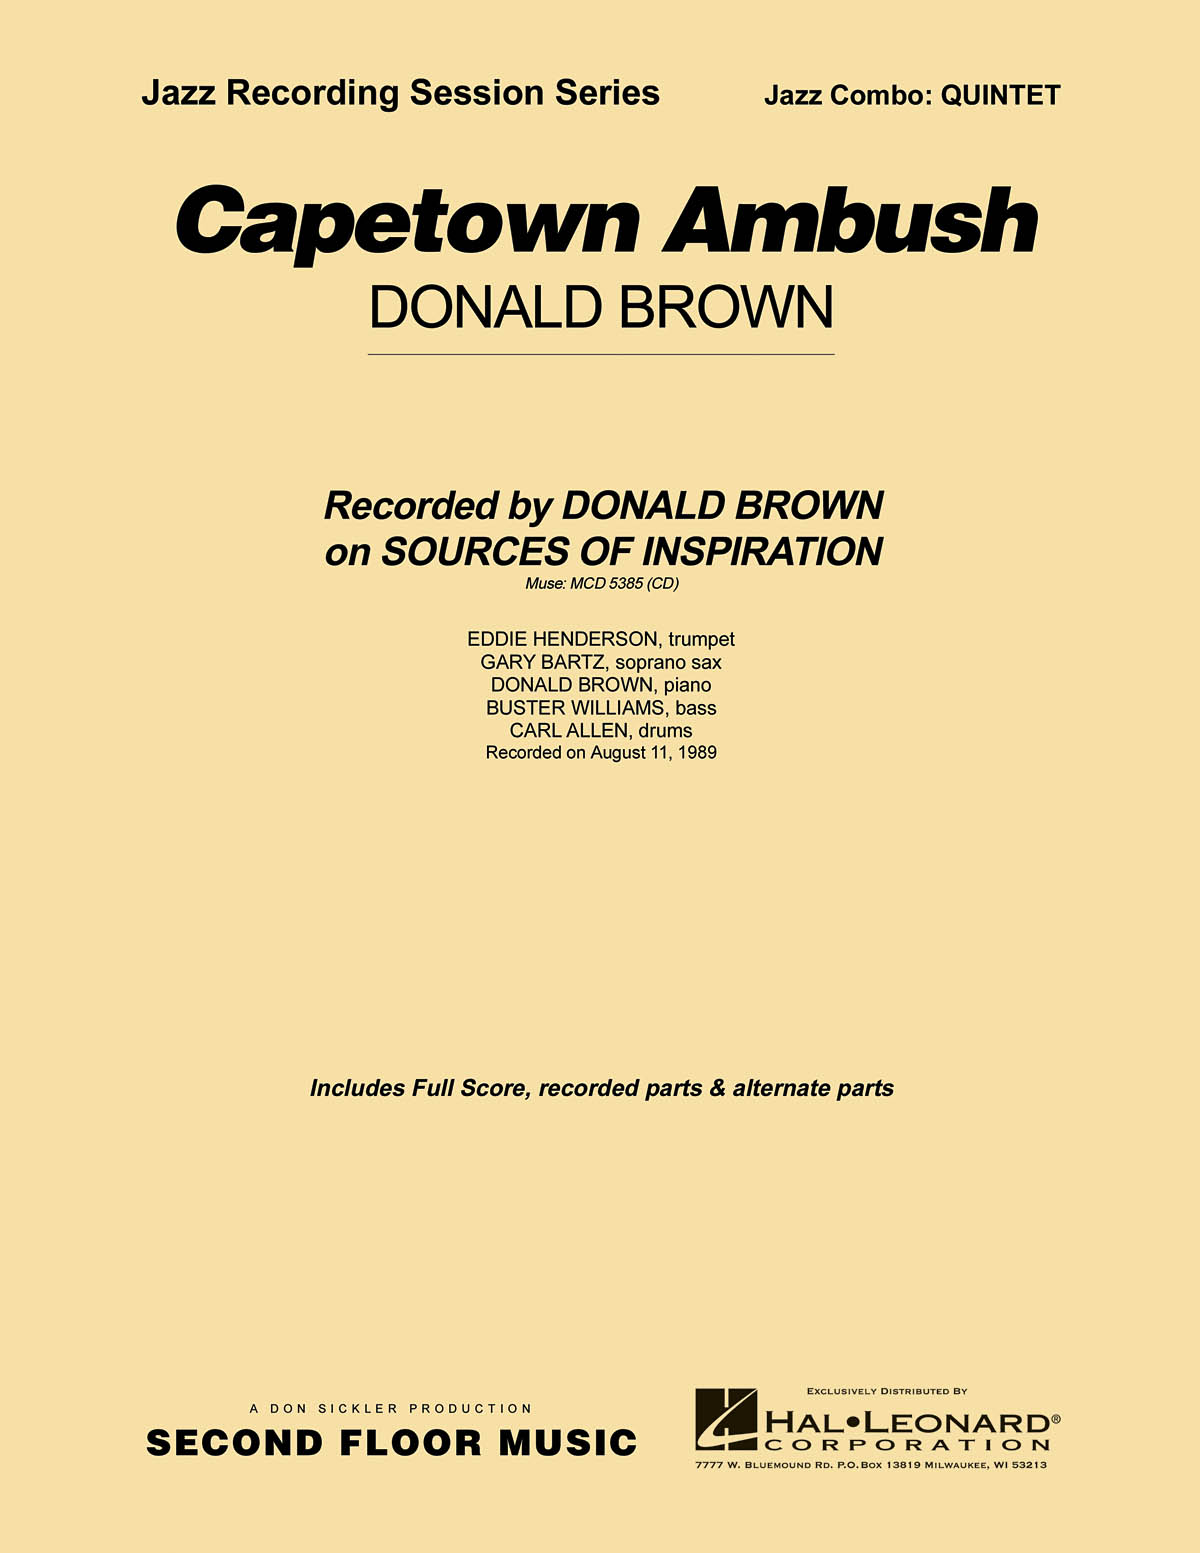 Capetown Ambush